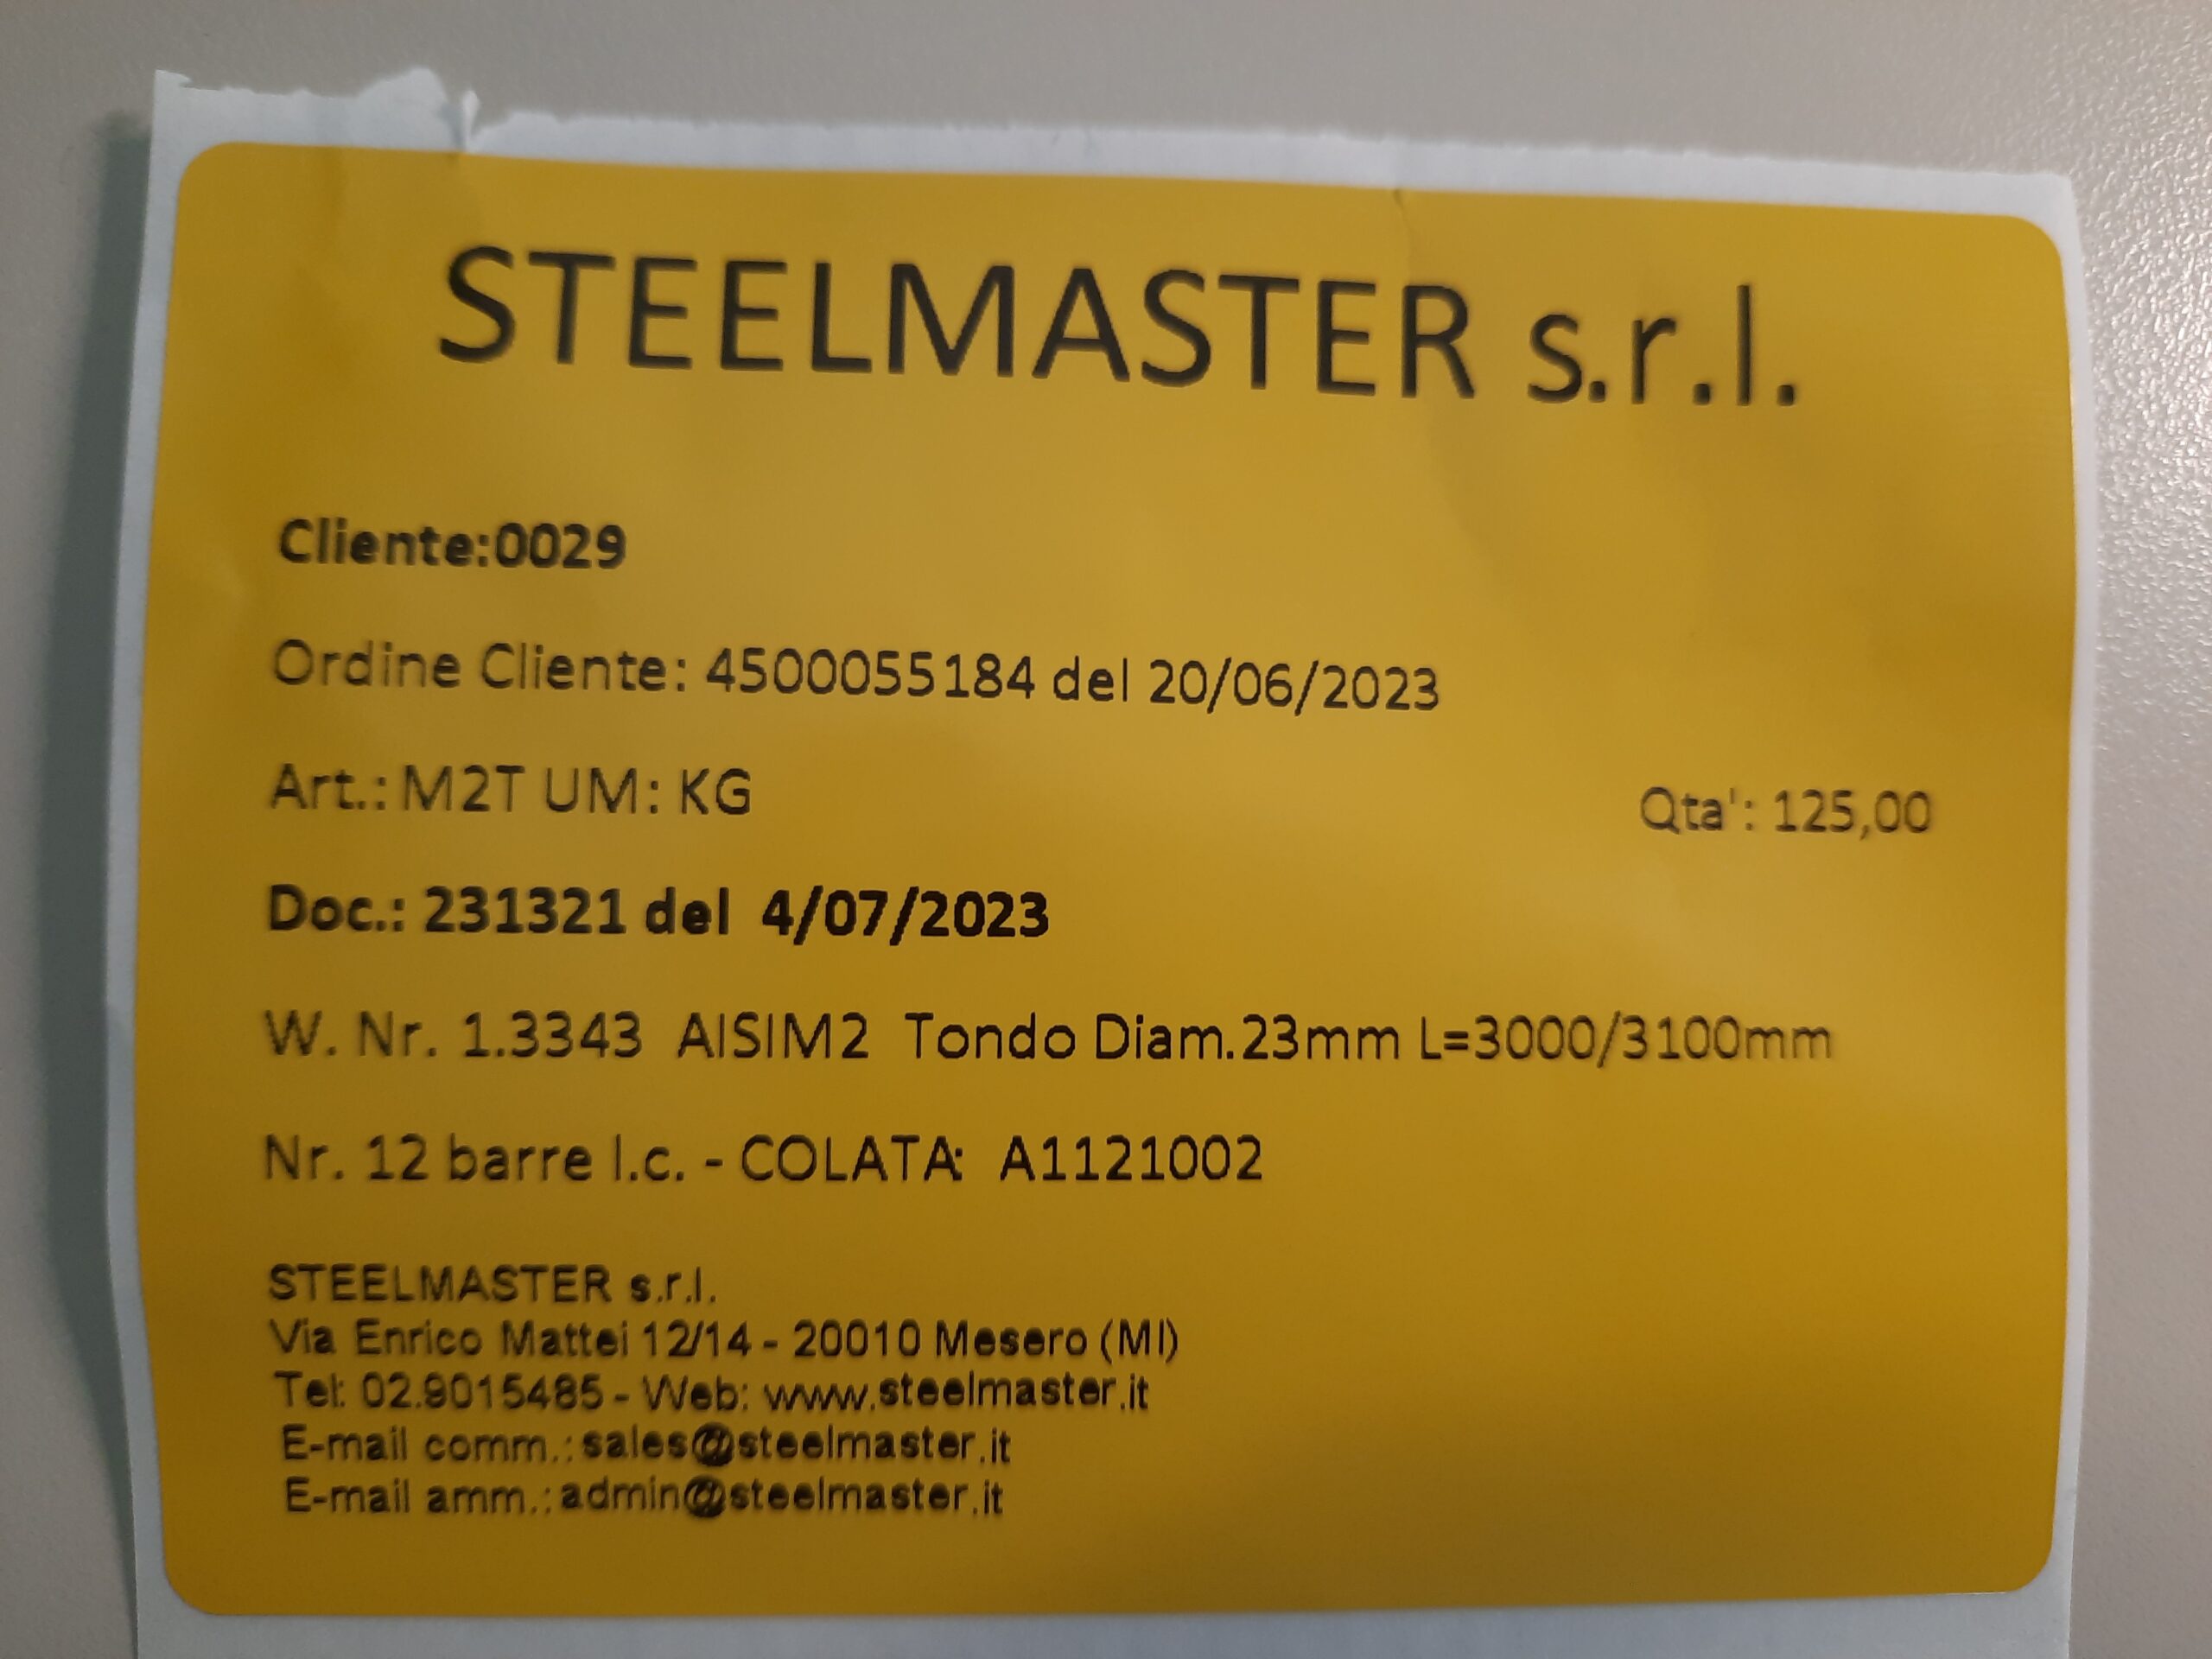 etichetta steelmaster scaled